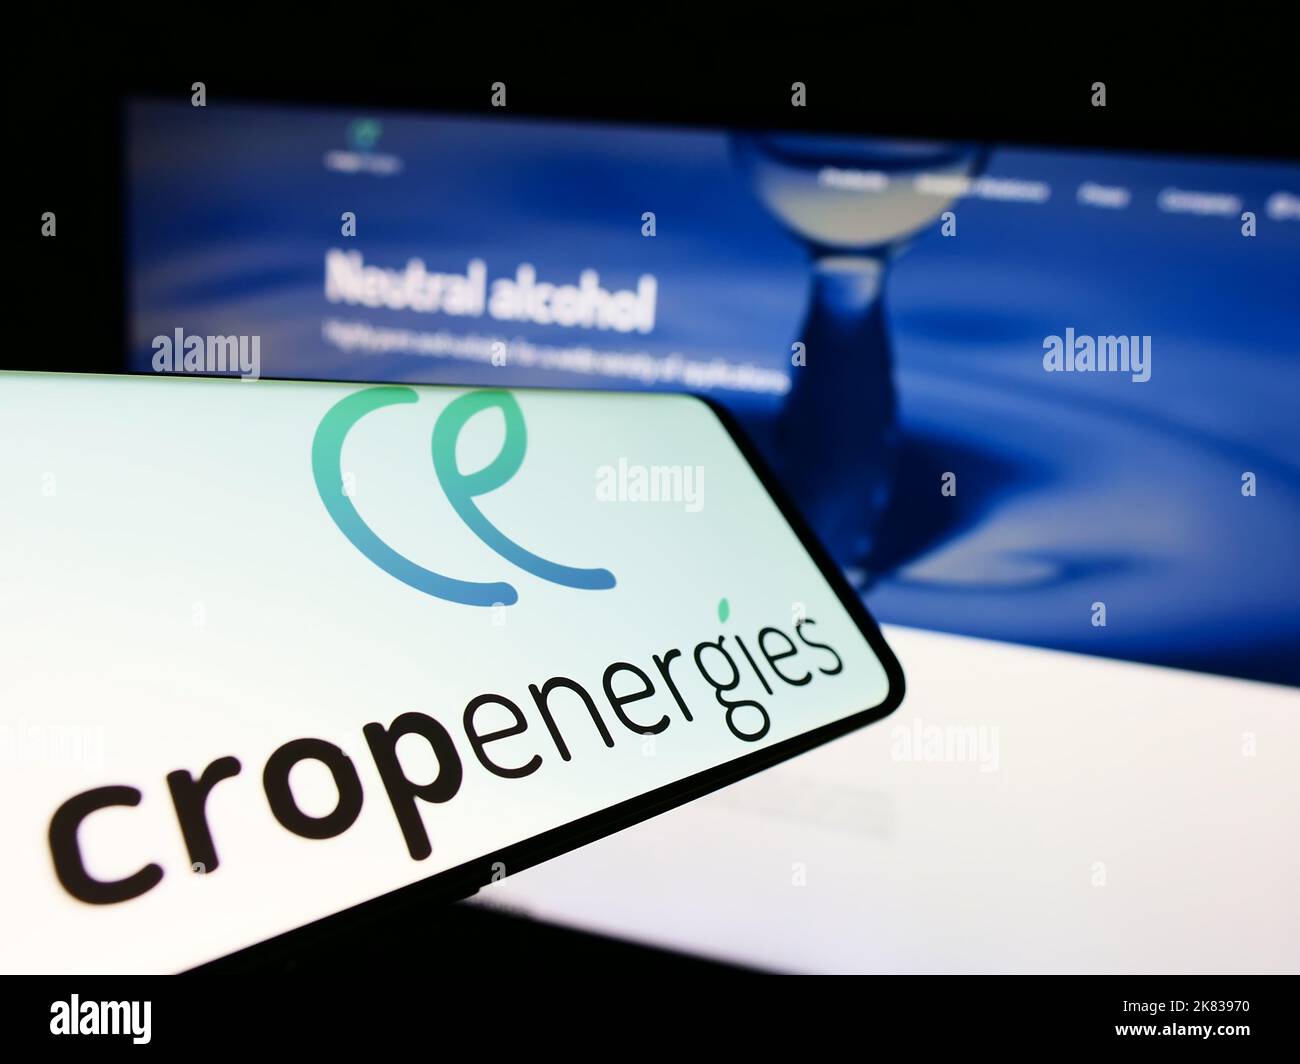 Cellulare con logo della società tedesca di energia rinnovabile CropEnergies AG sullo schermo di fronte al sito web. Messa a fuoco al centro a destra del display del telefono. Foto Stock